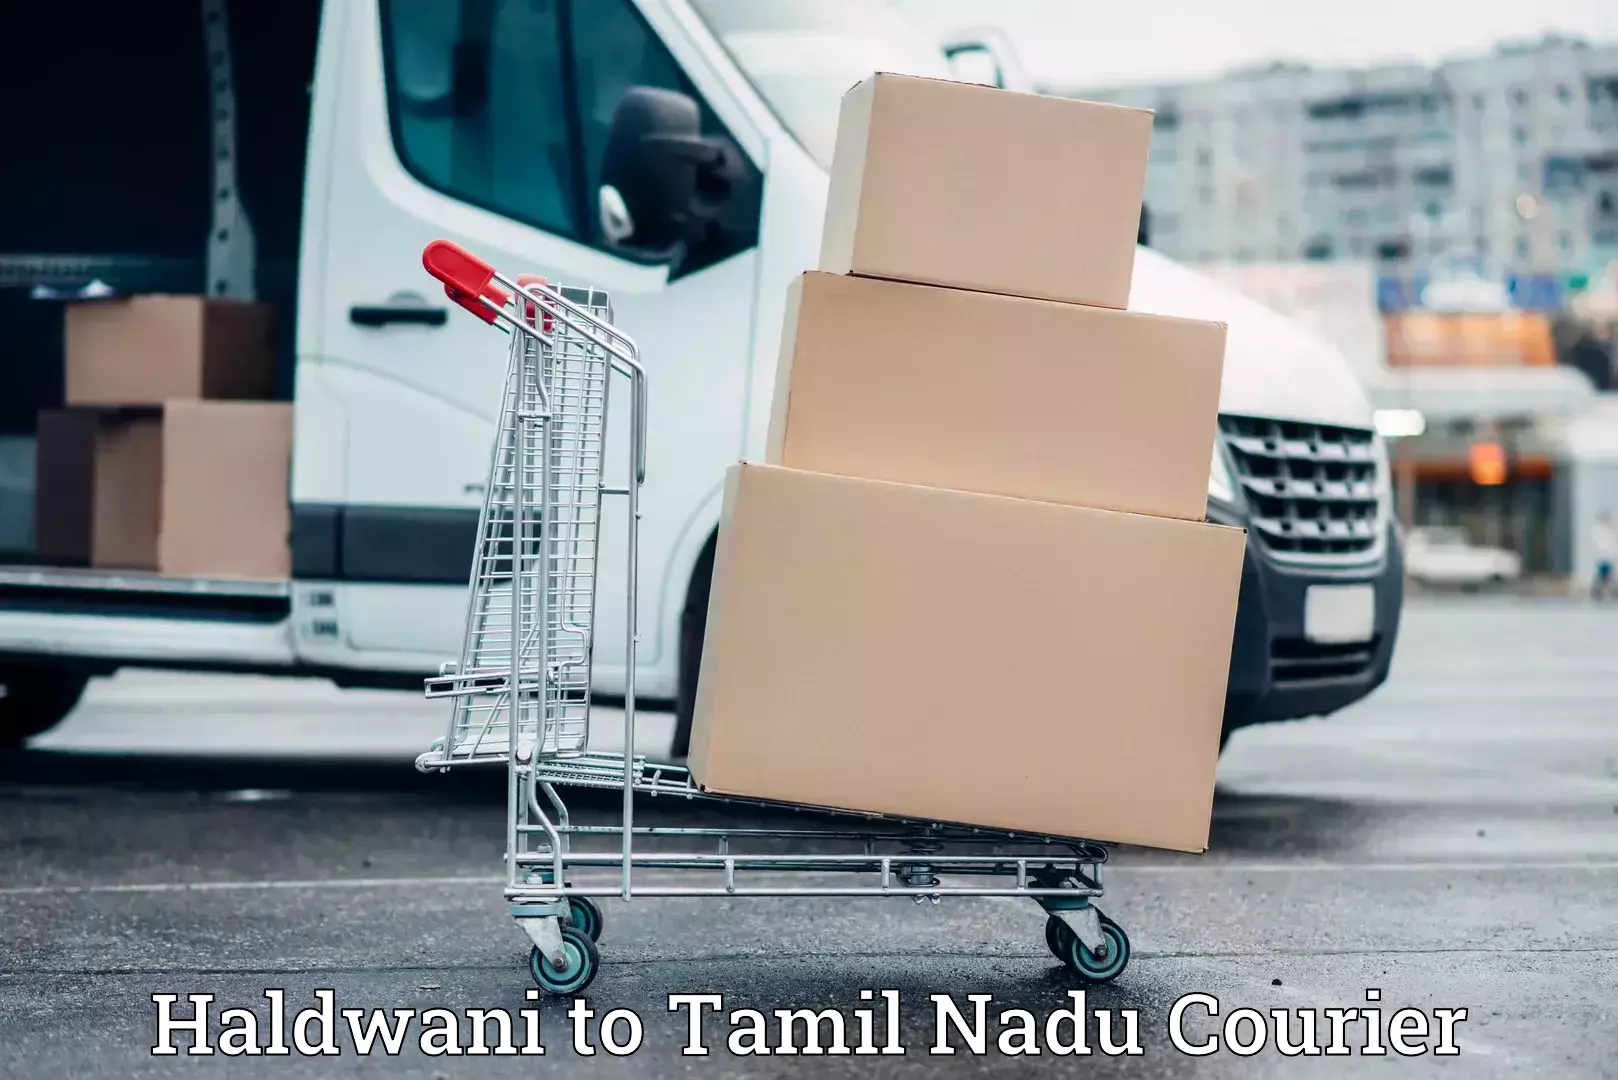 Furniture transport experts Haldwani to Tamil Nadu